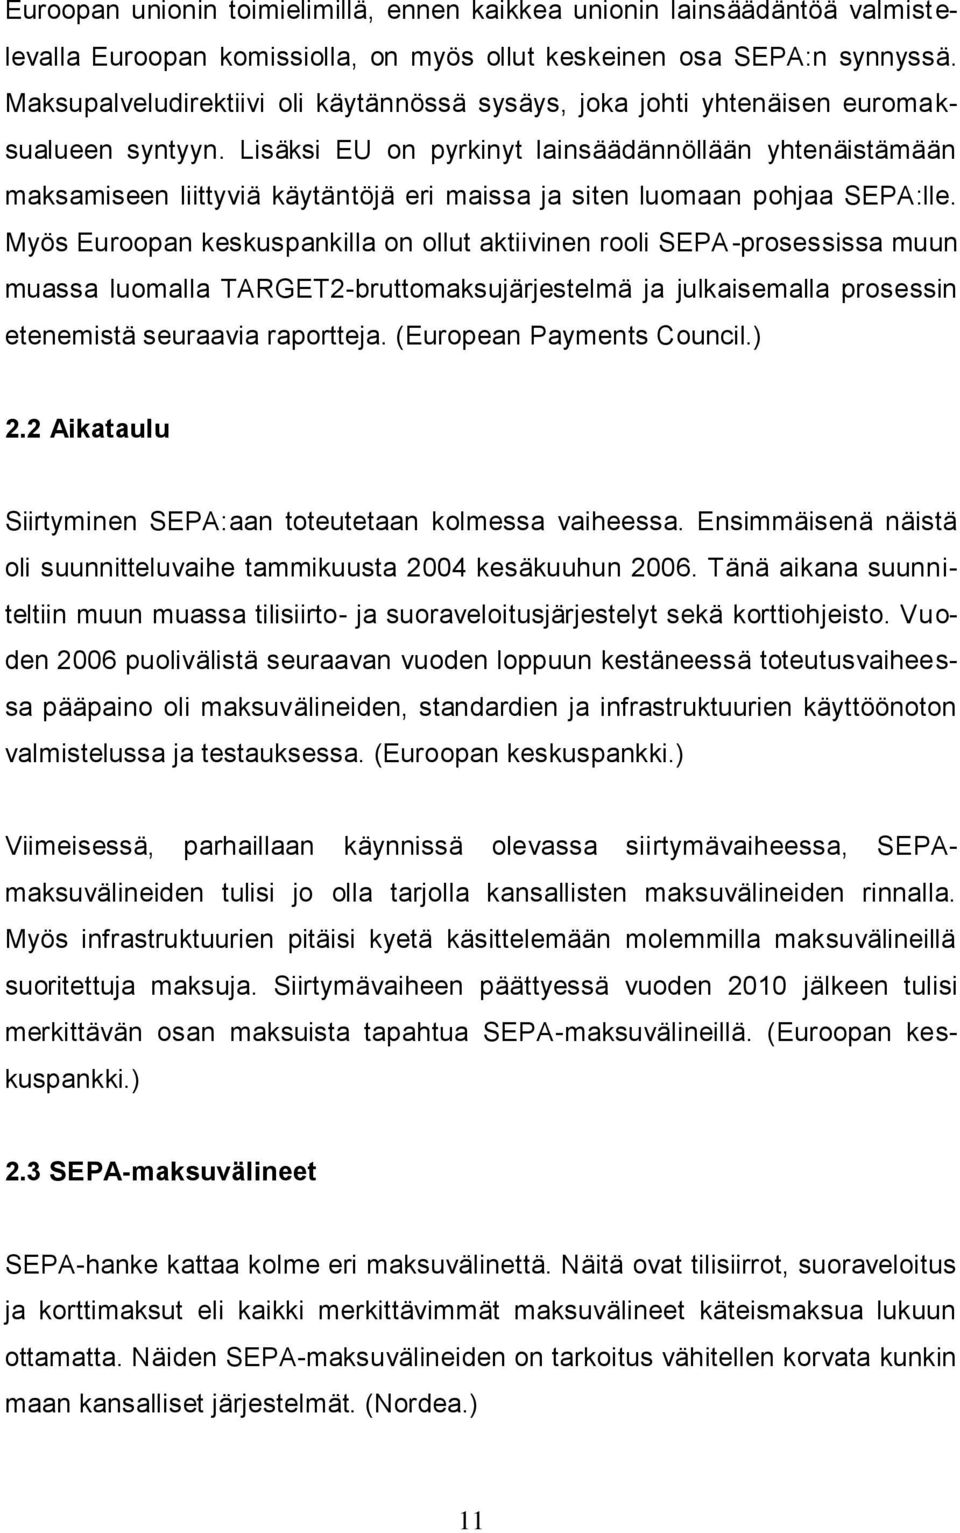 Lisäksi EU on pyrkinyt lainsäädännöllään yhtenäistämään maksamiseen liittyviä käytäntöjä eri maissa ja siten luomaan pohjaa SEPA:lle.